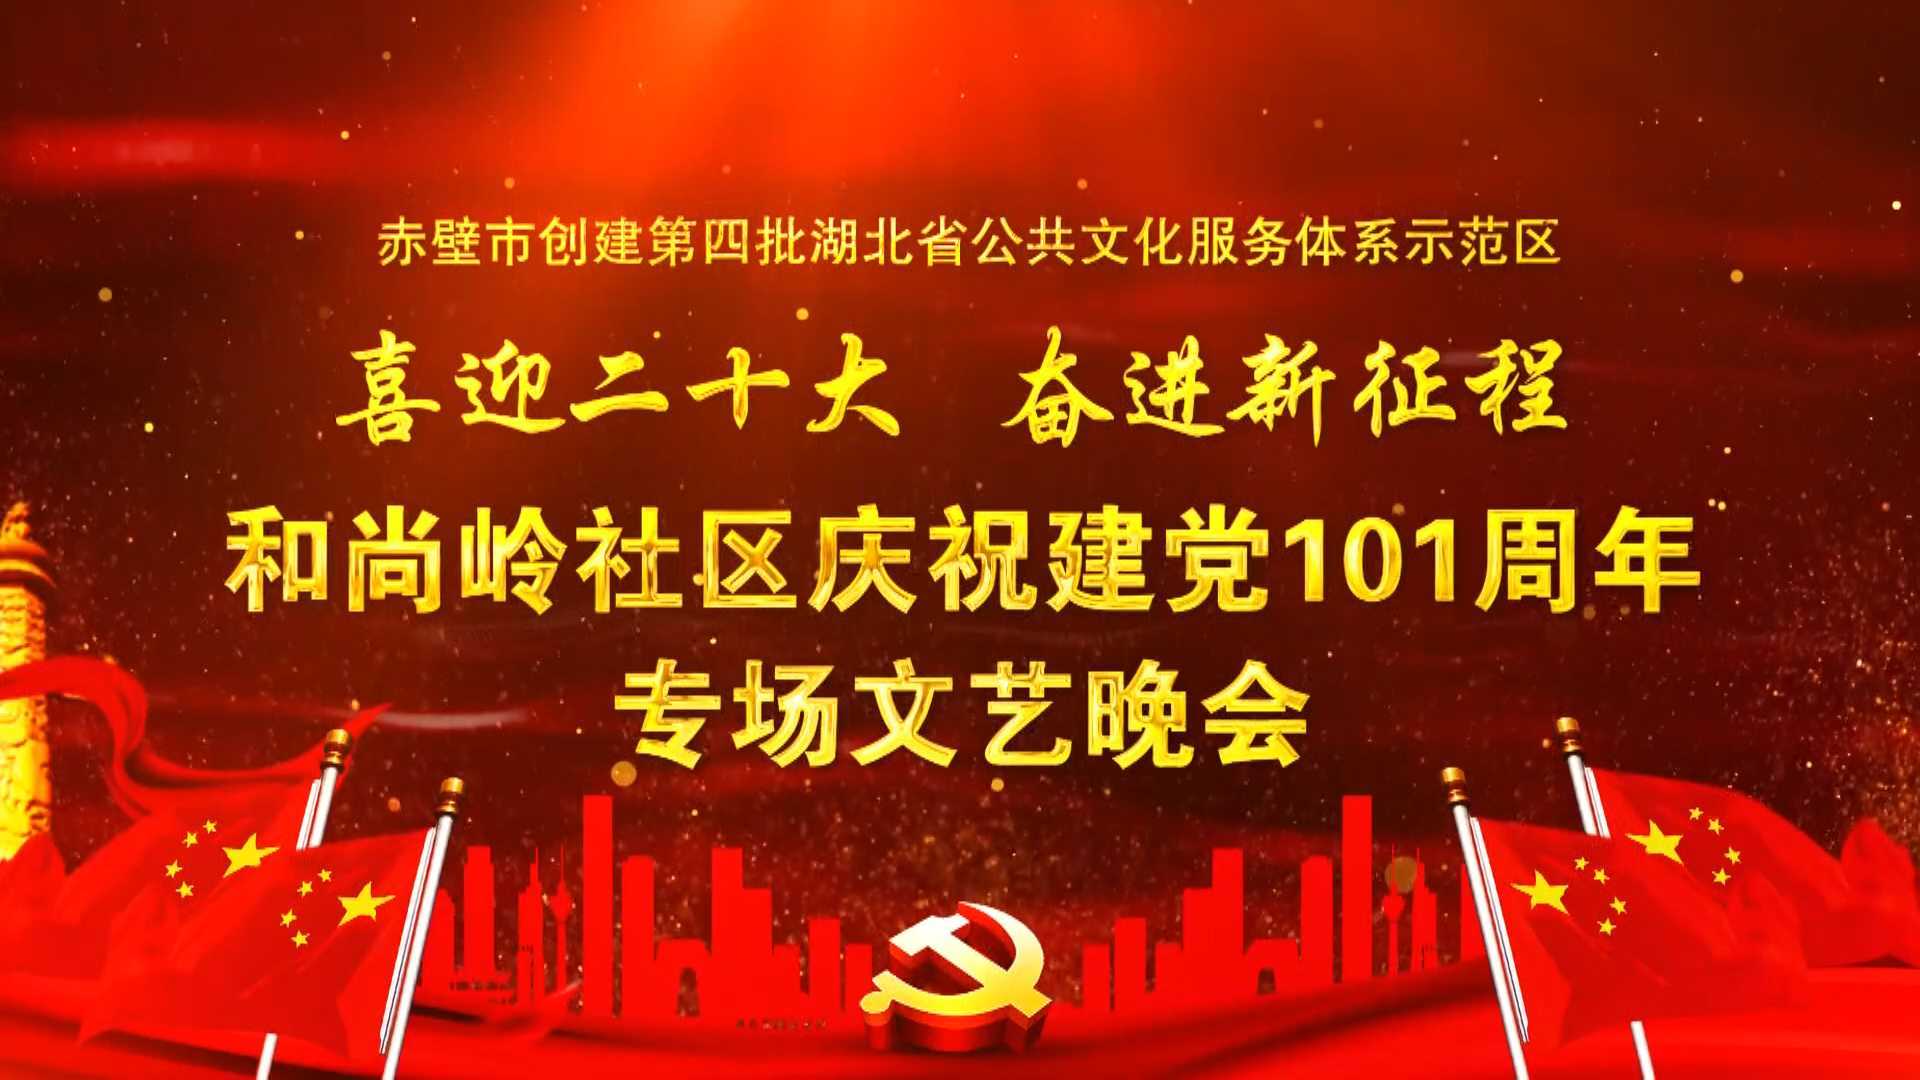 和尚岭社区庆祝建党101周年专场文艺晚会